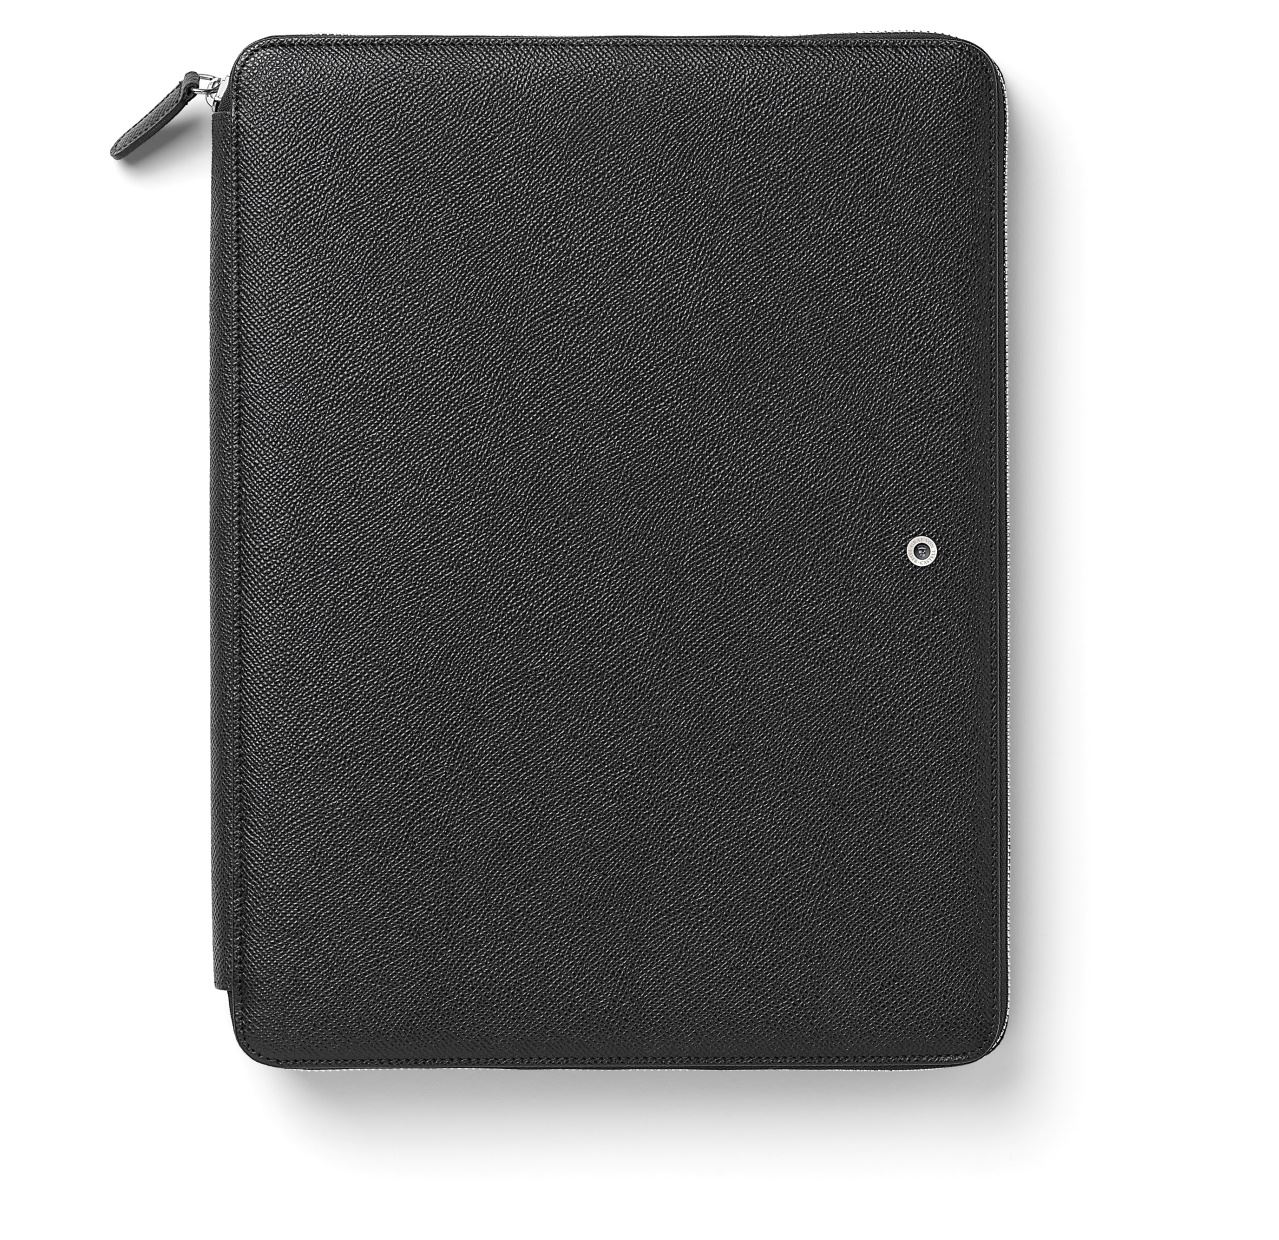 Graf-von-Faber-Castell - Estuche con funda para tableta, tamaño A4 negro